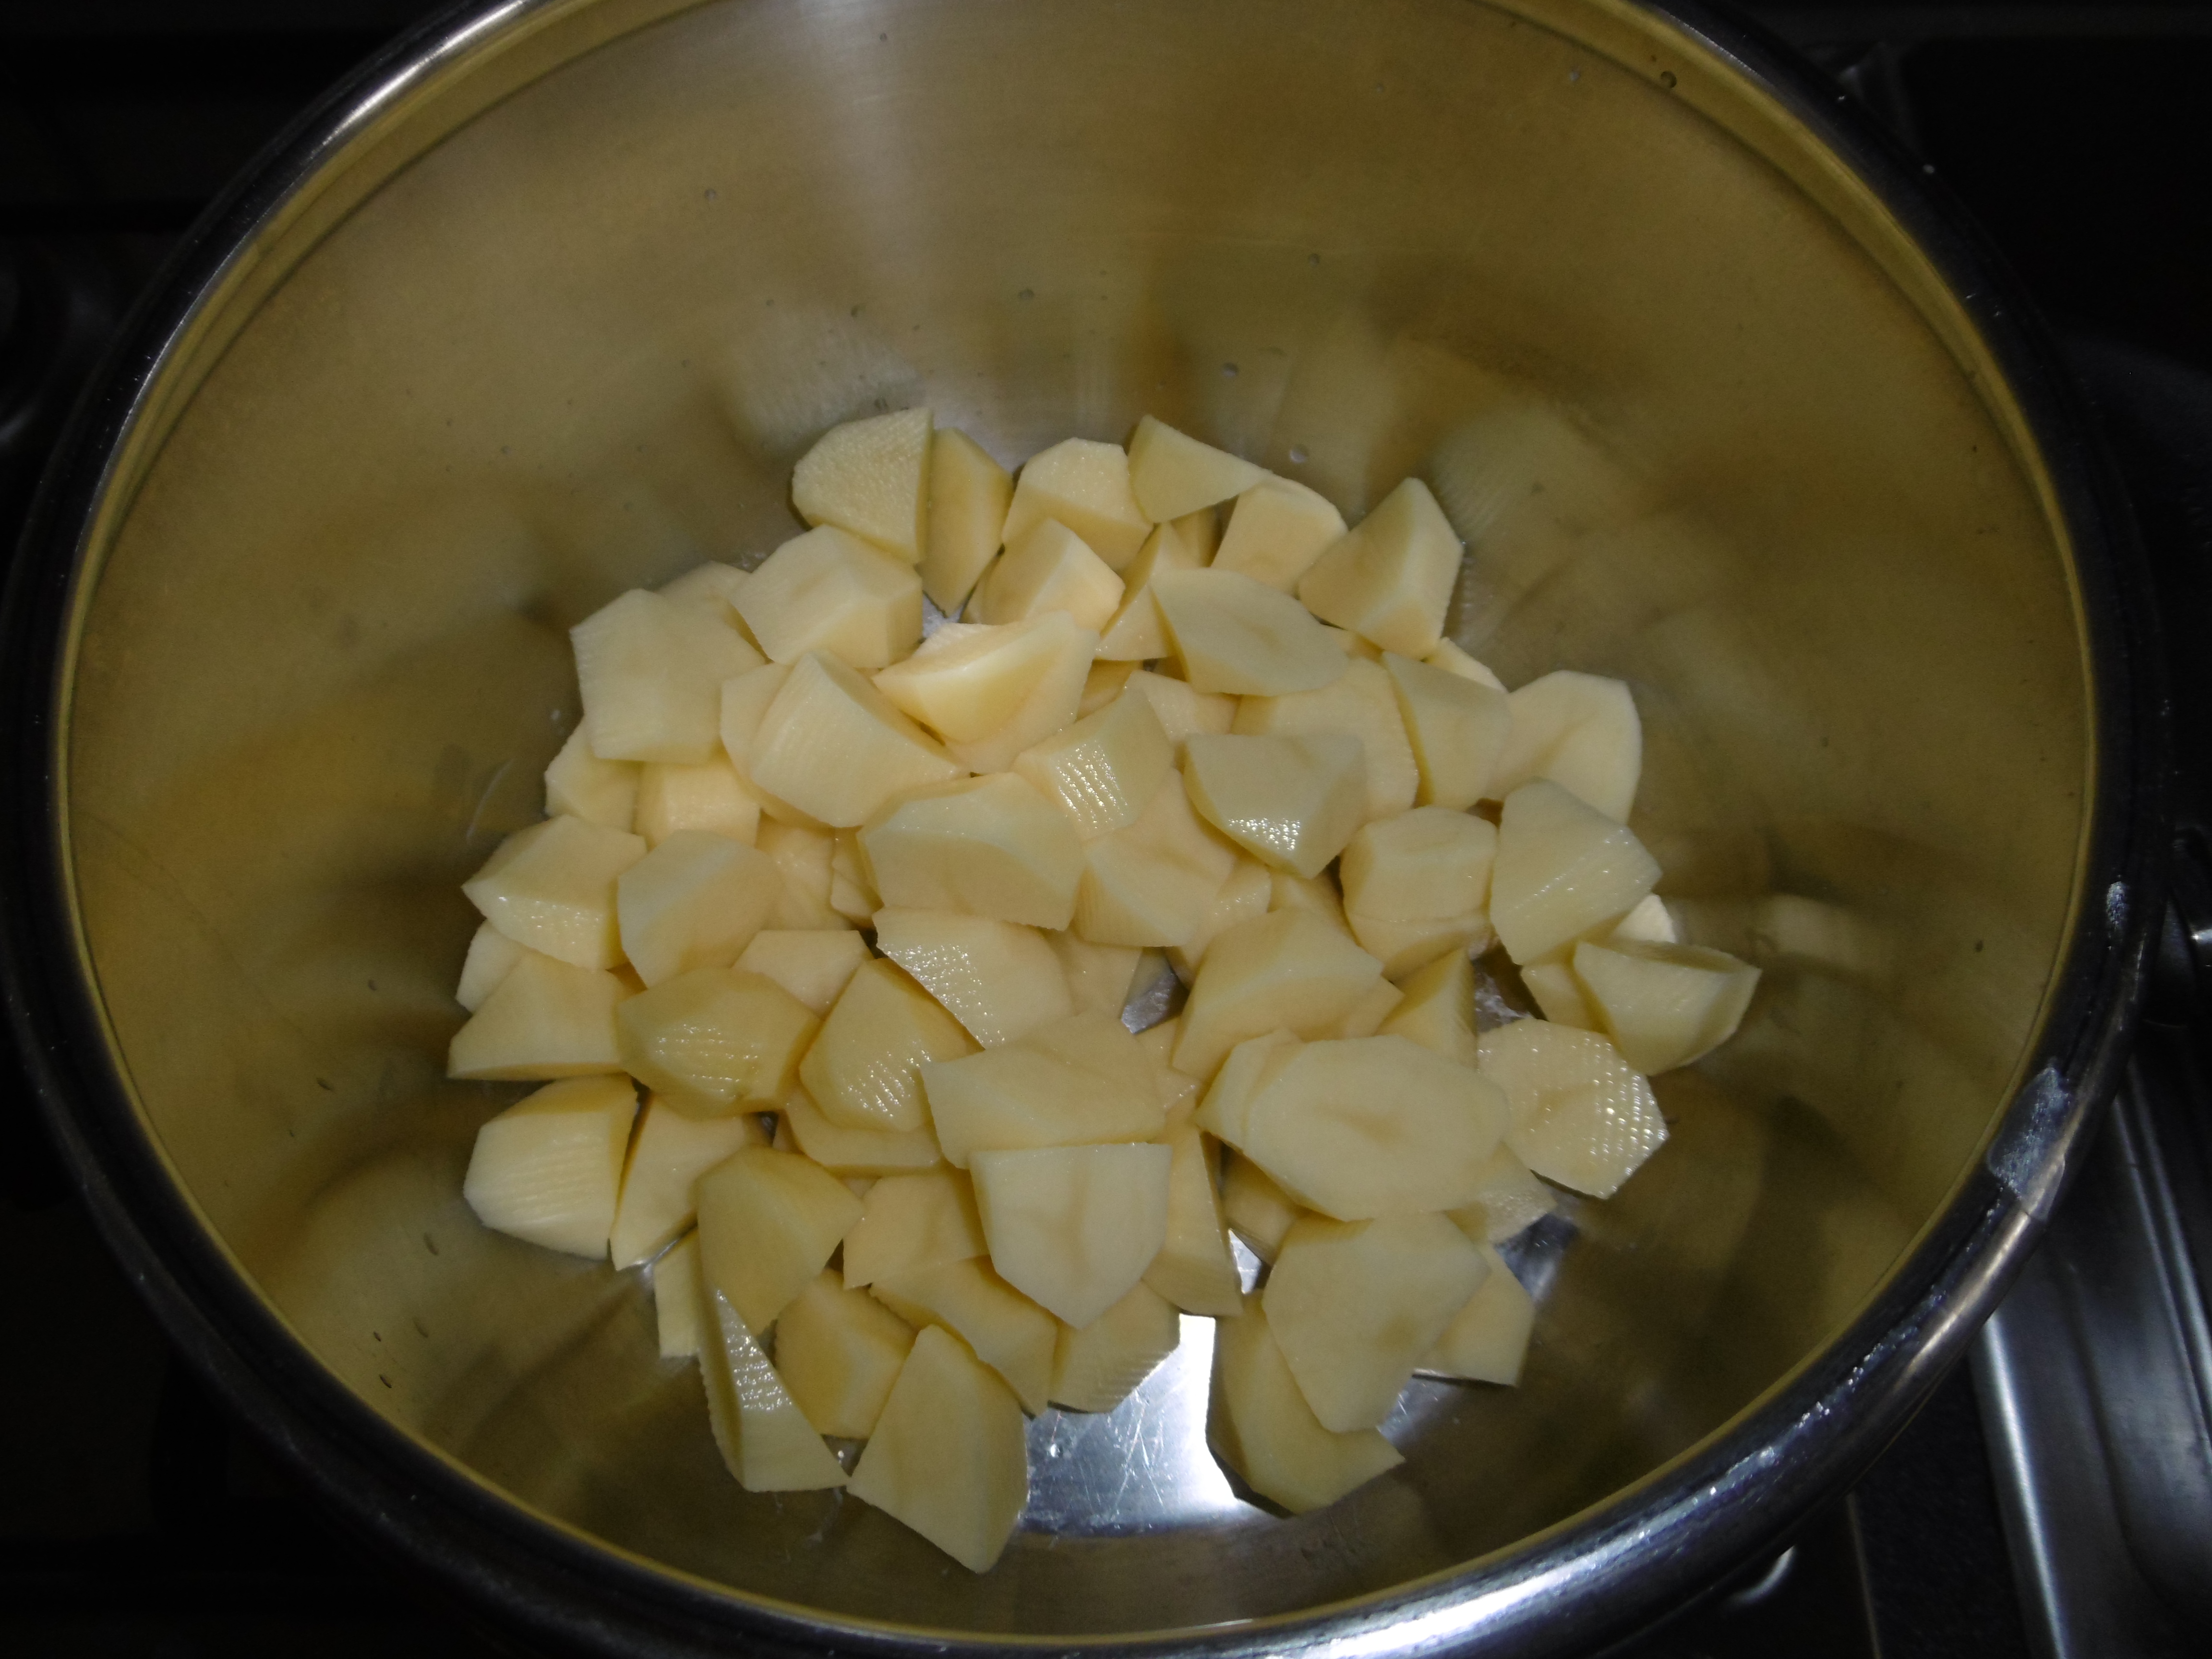 Torta di patate con wurstel e mozzarella - Patate tagliate